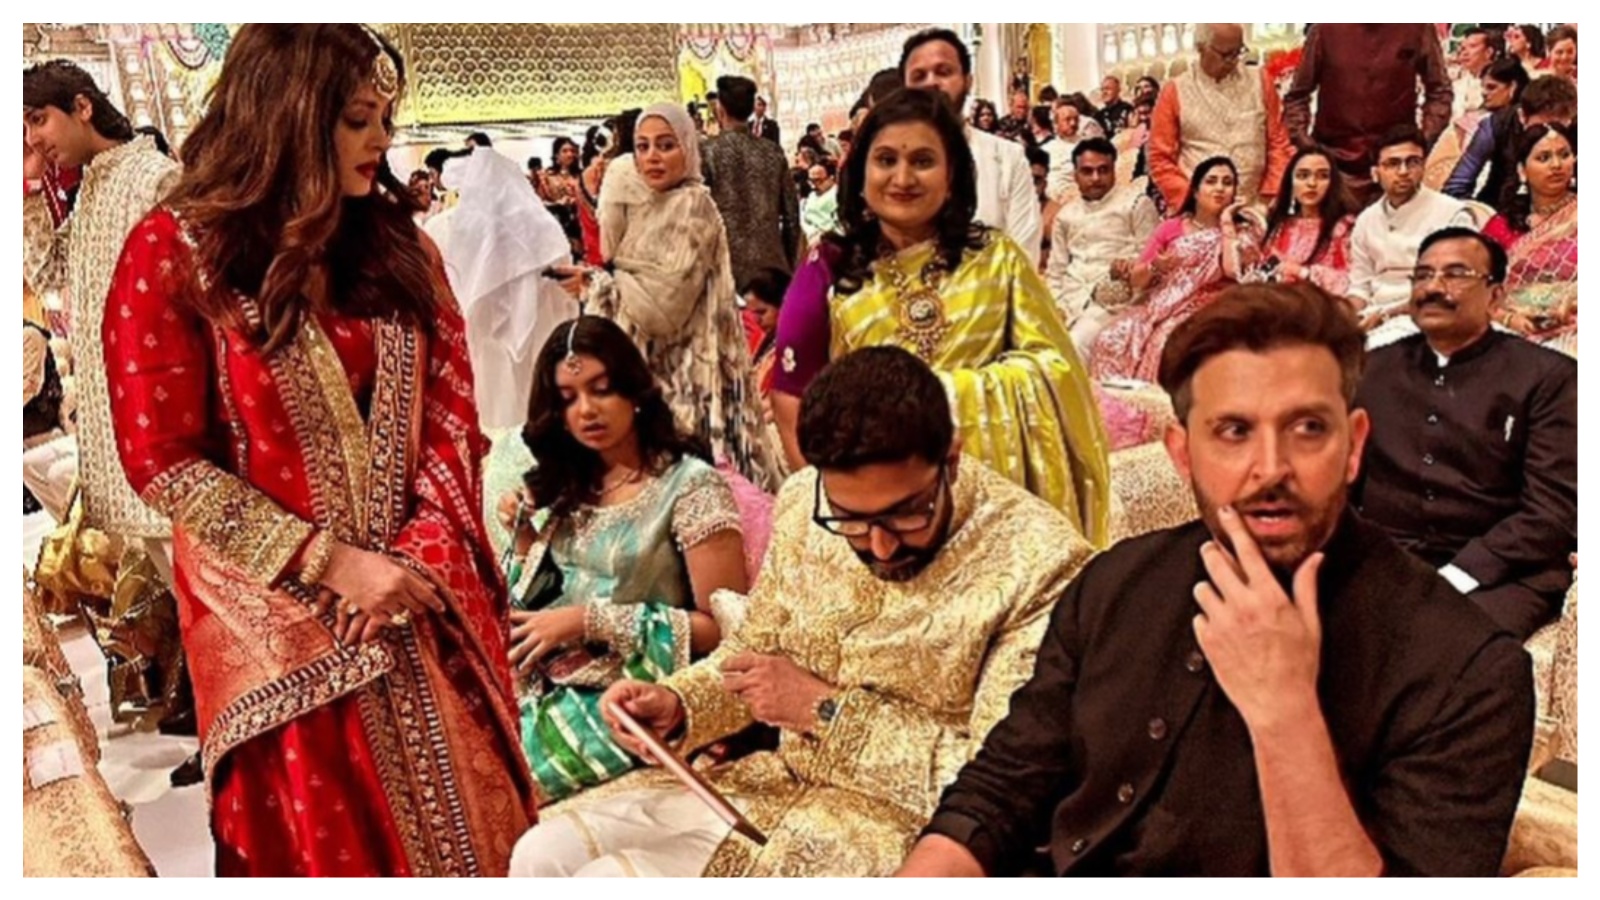 ऐश्वर्या राय, अभिषेक बच्चन ने अंबानी की शादी में ऋतिक रोशन के साथ अलग-अलग पोज दिए, आराध्या भी उनके साथ शामिल हुईं